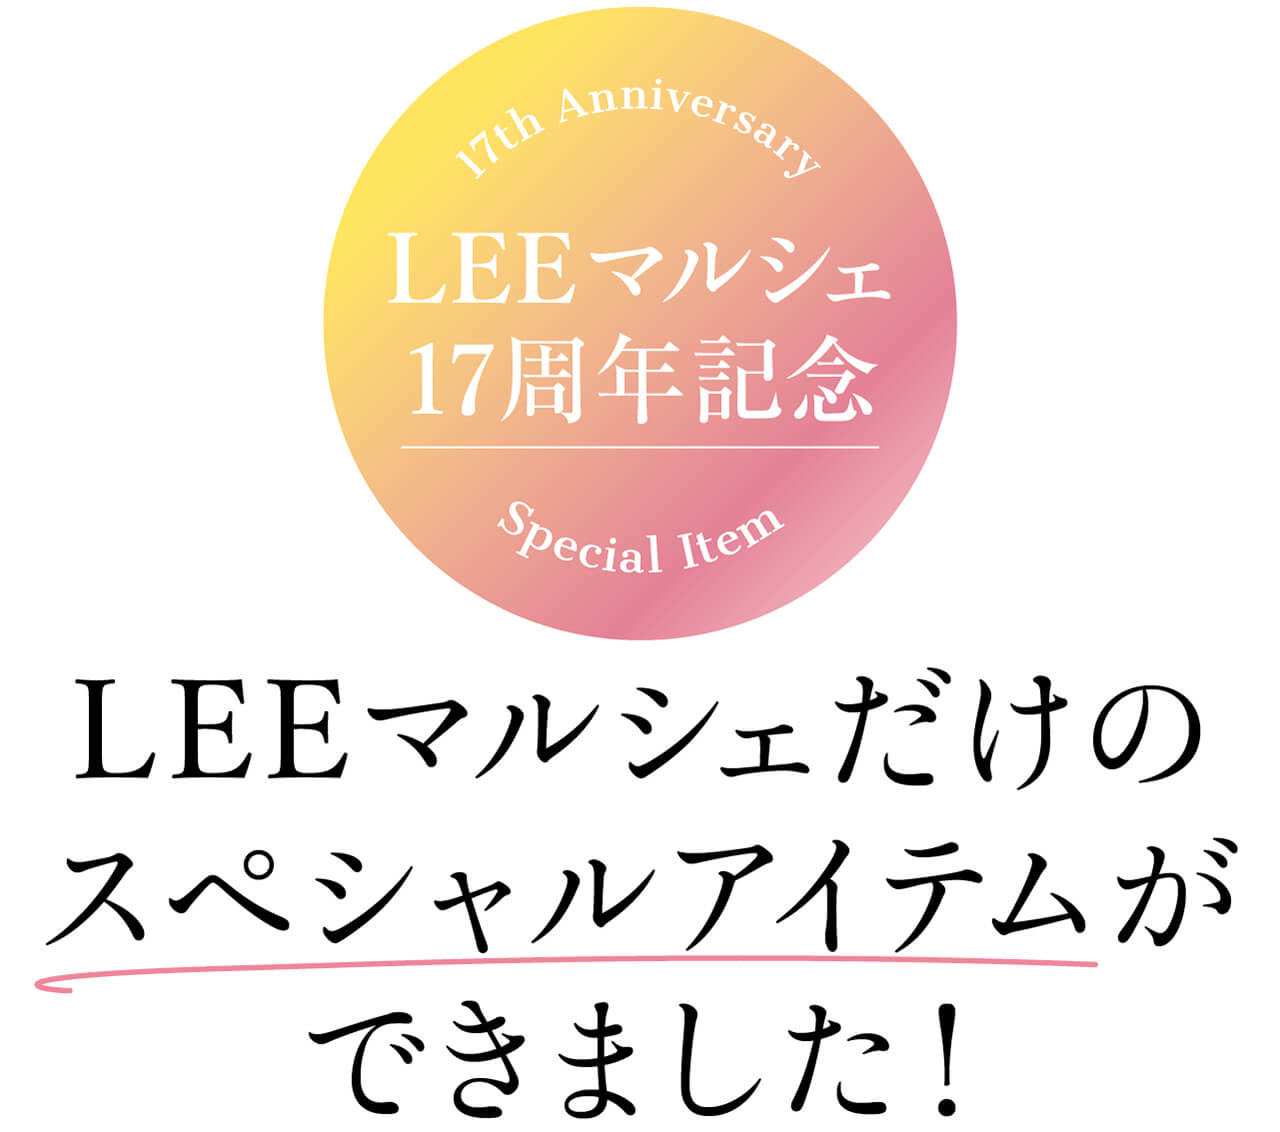 17th Anniversary Special Item　LEEマルシェ17周年記念　LEEマルシェだけのスペシャルアイテムができました！